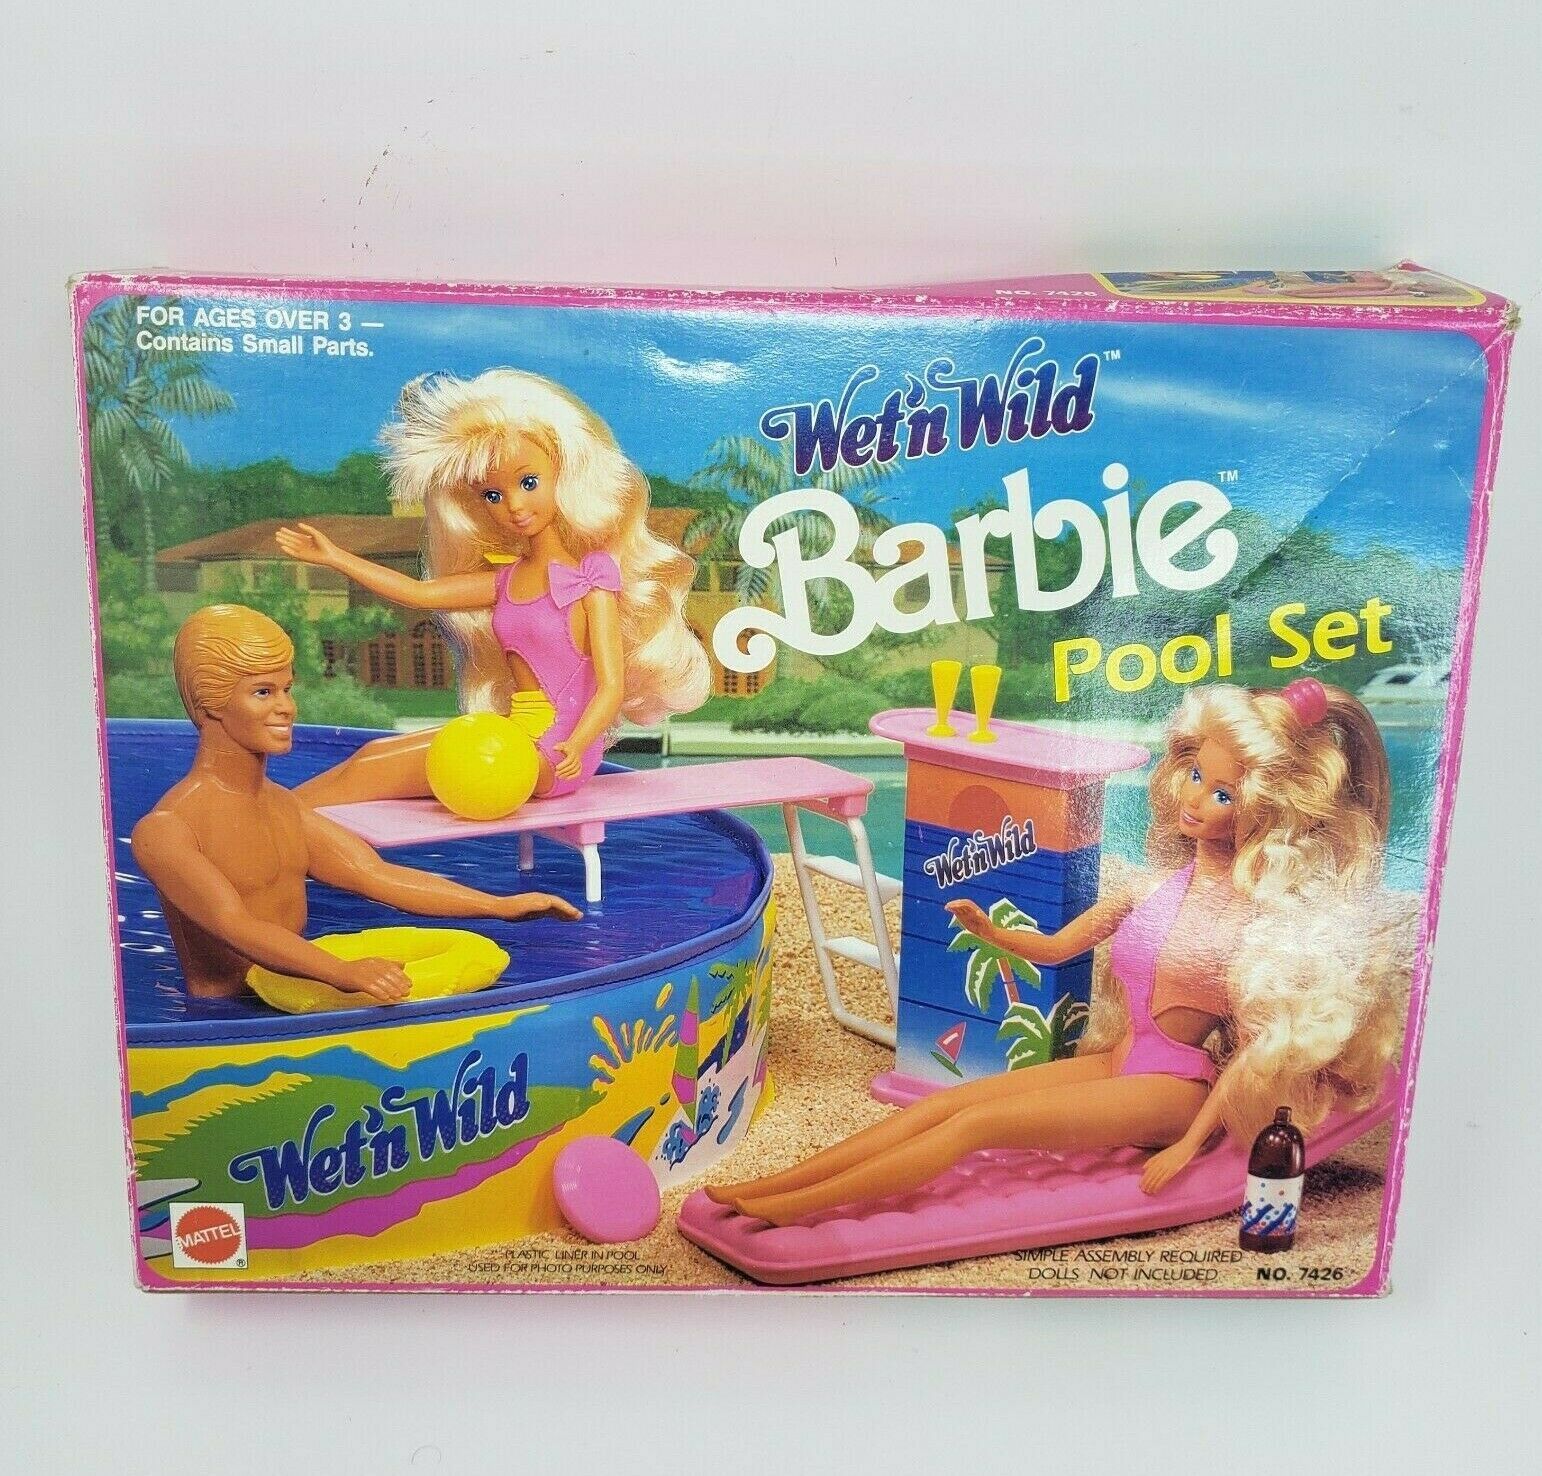 Vintage 1989 Wet 'n Wild Barbie Pool Set W/ and 50 similar items